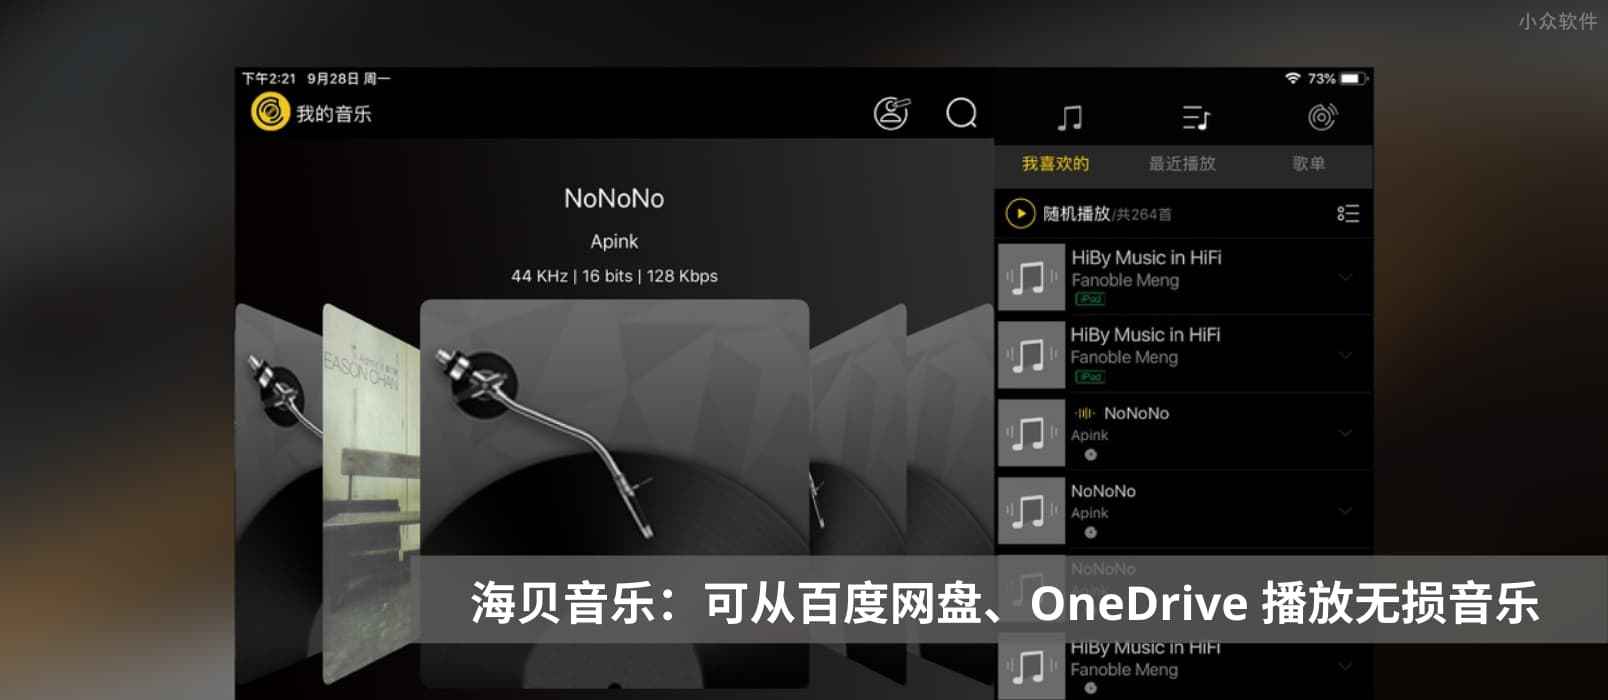 海贝音乐 – 专为 HiFi 设计，支持从百度网盘、OneDrive 直接播放的无损音乐播放器[iOS/Android]